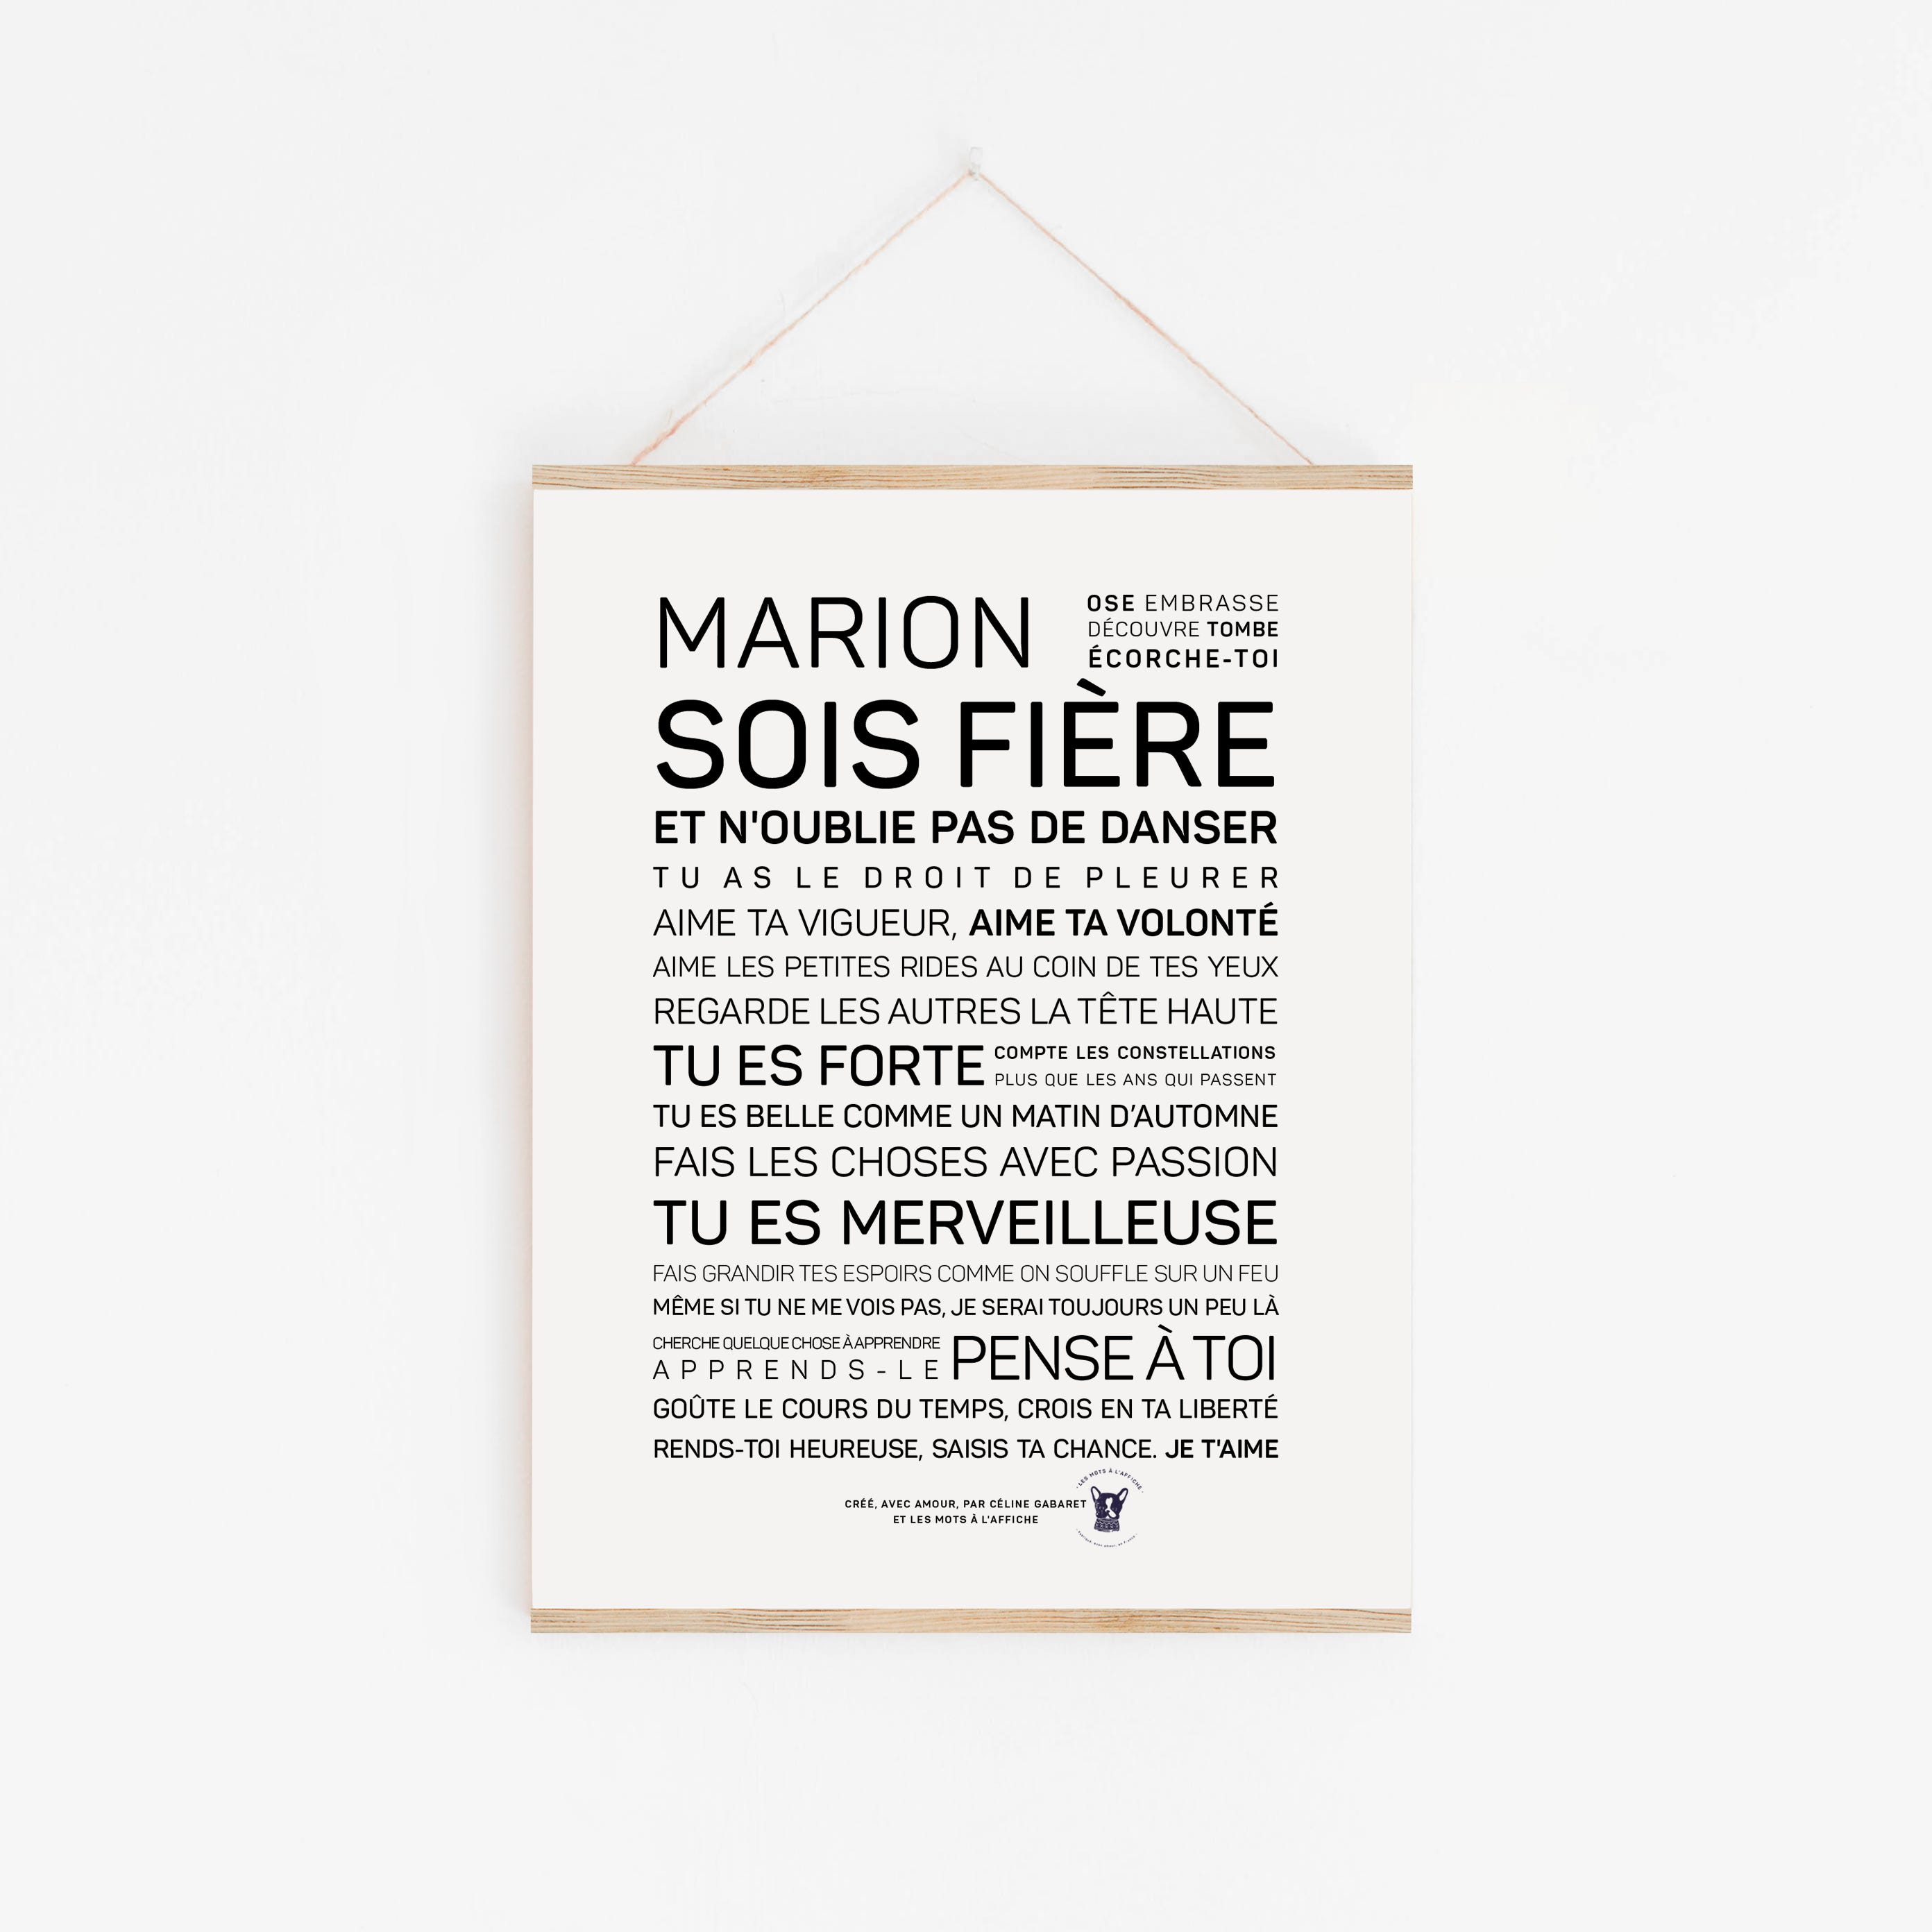 Affiche - Chez papi et mamie - Version PDF